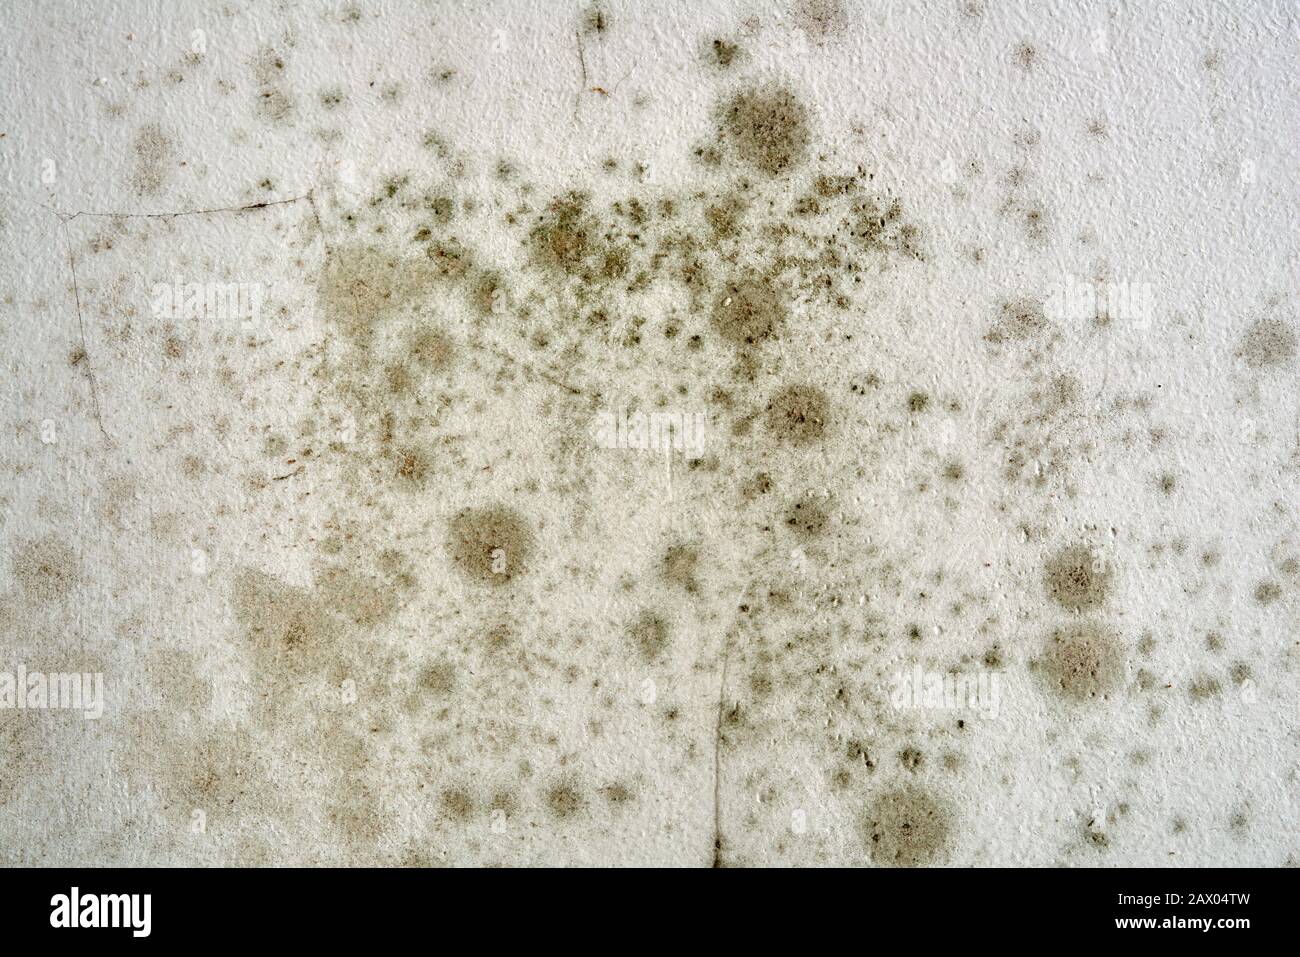 Schwarzer Schimmel und Pilz an der Hauswand. Schimmel an der Decke - das Problem der Belüftung, Feuchtigkeit, Kälte in der Wohnung. Stockfoto